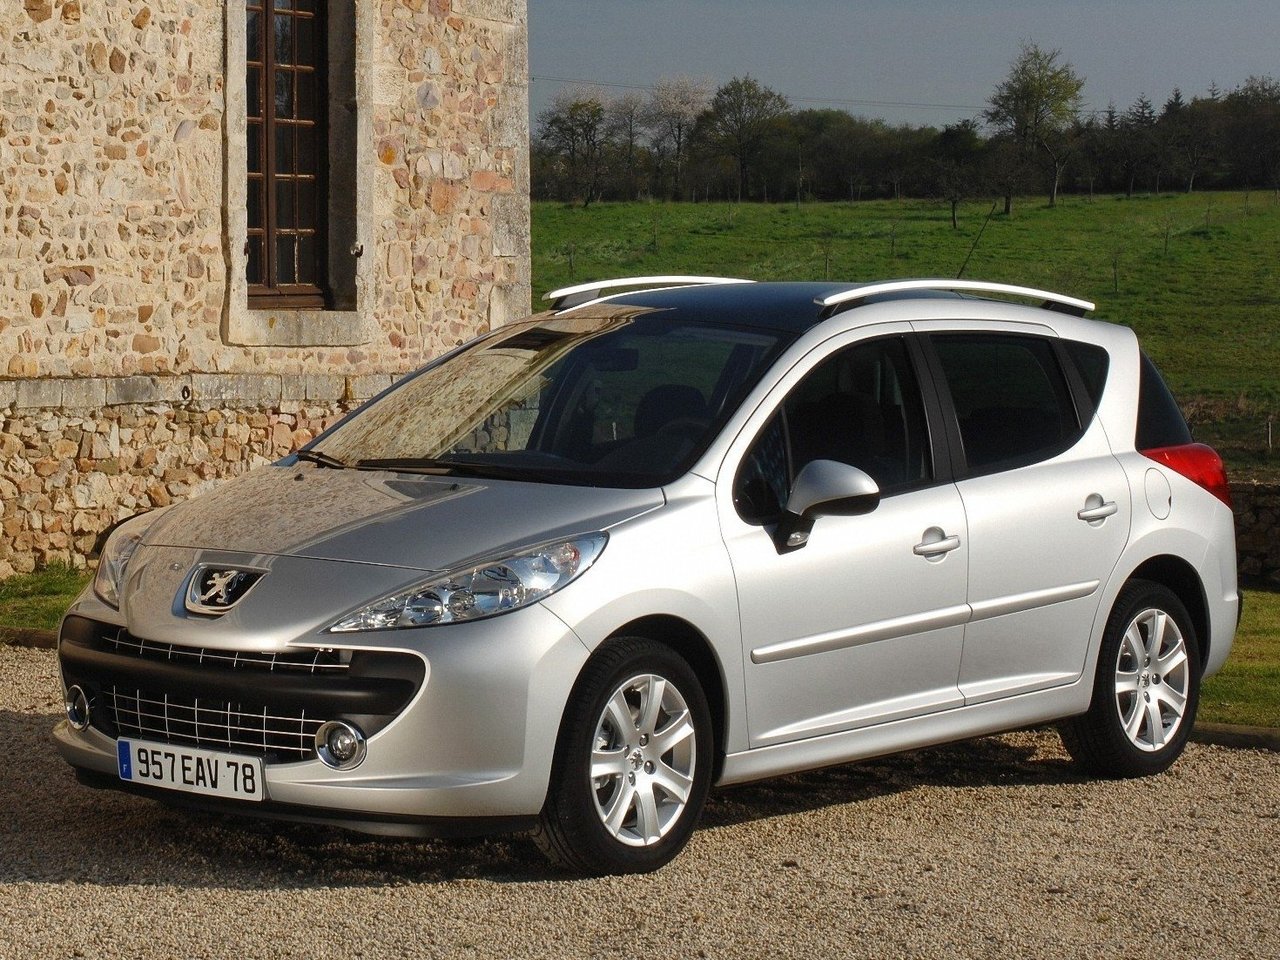 Расход газа трёх комплектаций универсала пять дверей Peugeot 207. Разница стоимости заправки газом и бензином. Автономный пробег до и после установки ГБО.